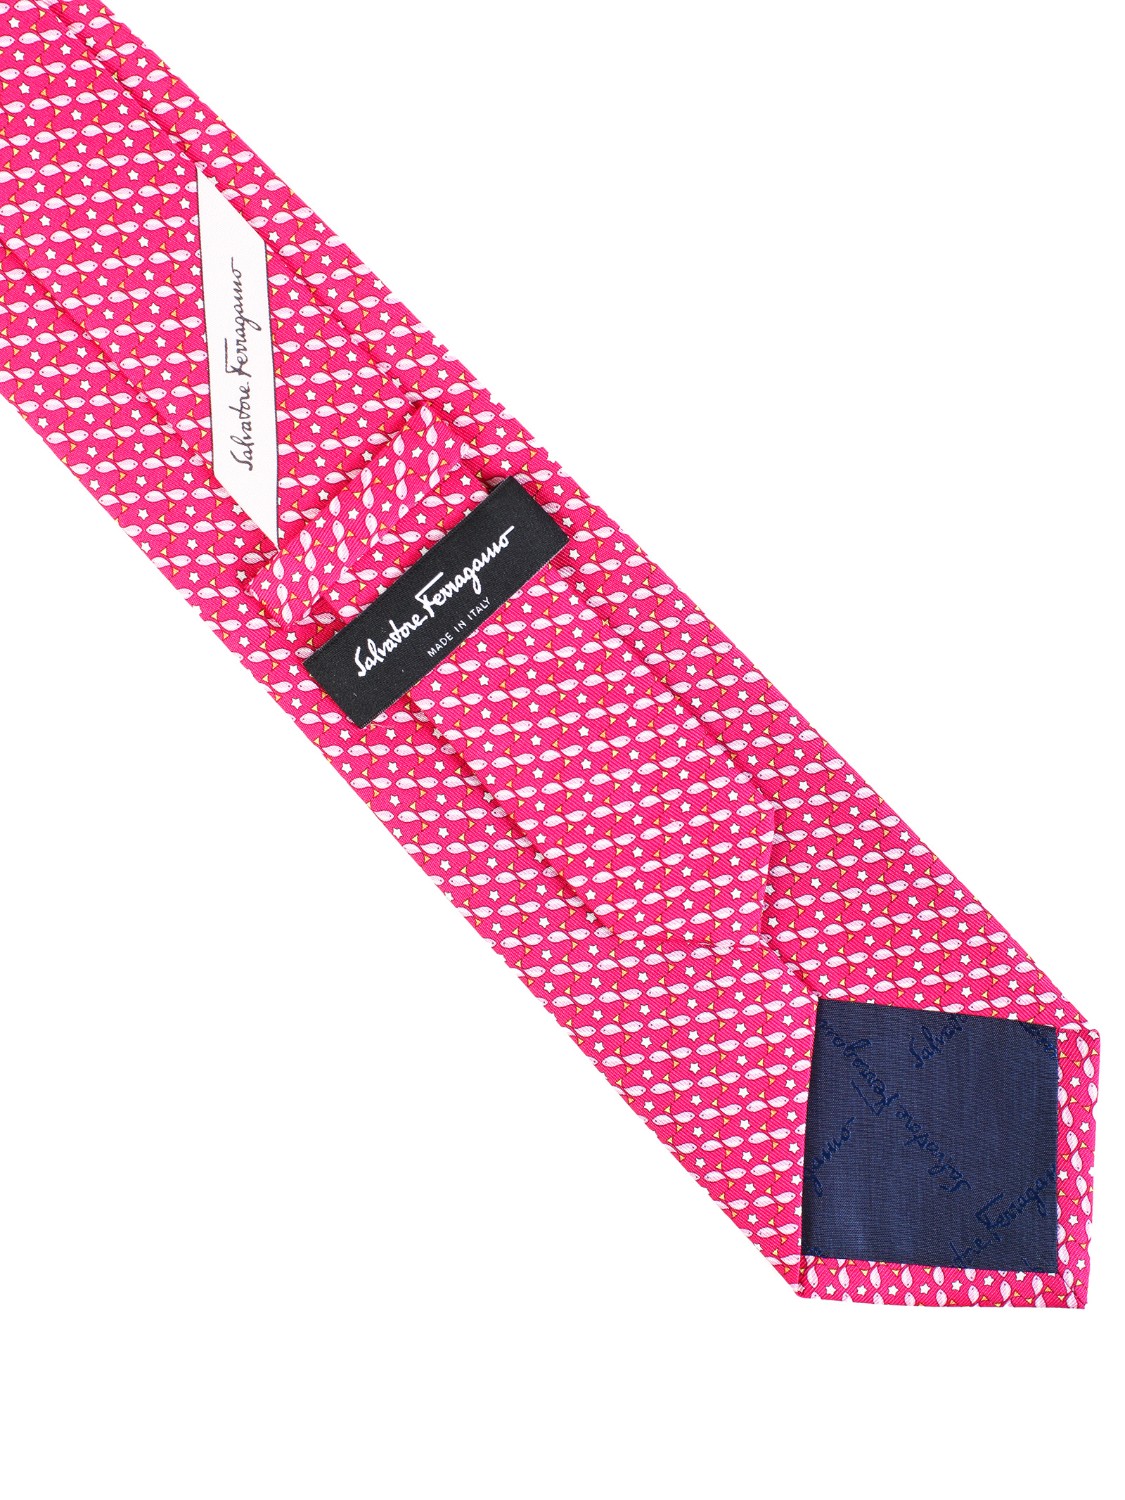 shop SALVATORE FERRAGAMO  Cravatta: Salvatore Ferragamo cravatta in seta con stampa pesci.
Composizione: 100% seta.
Made in Italy.. 357847 GUIZZO-006 702291 number 7083363